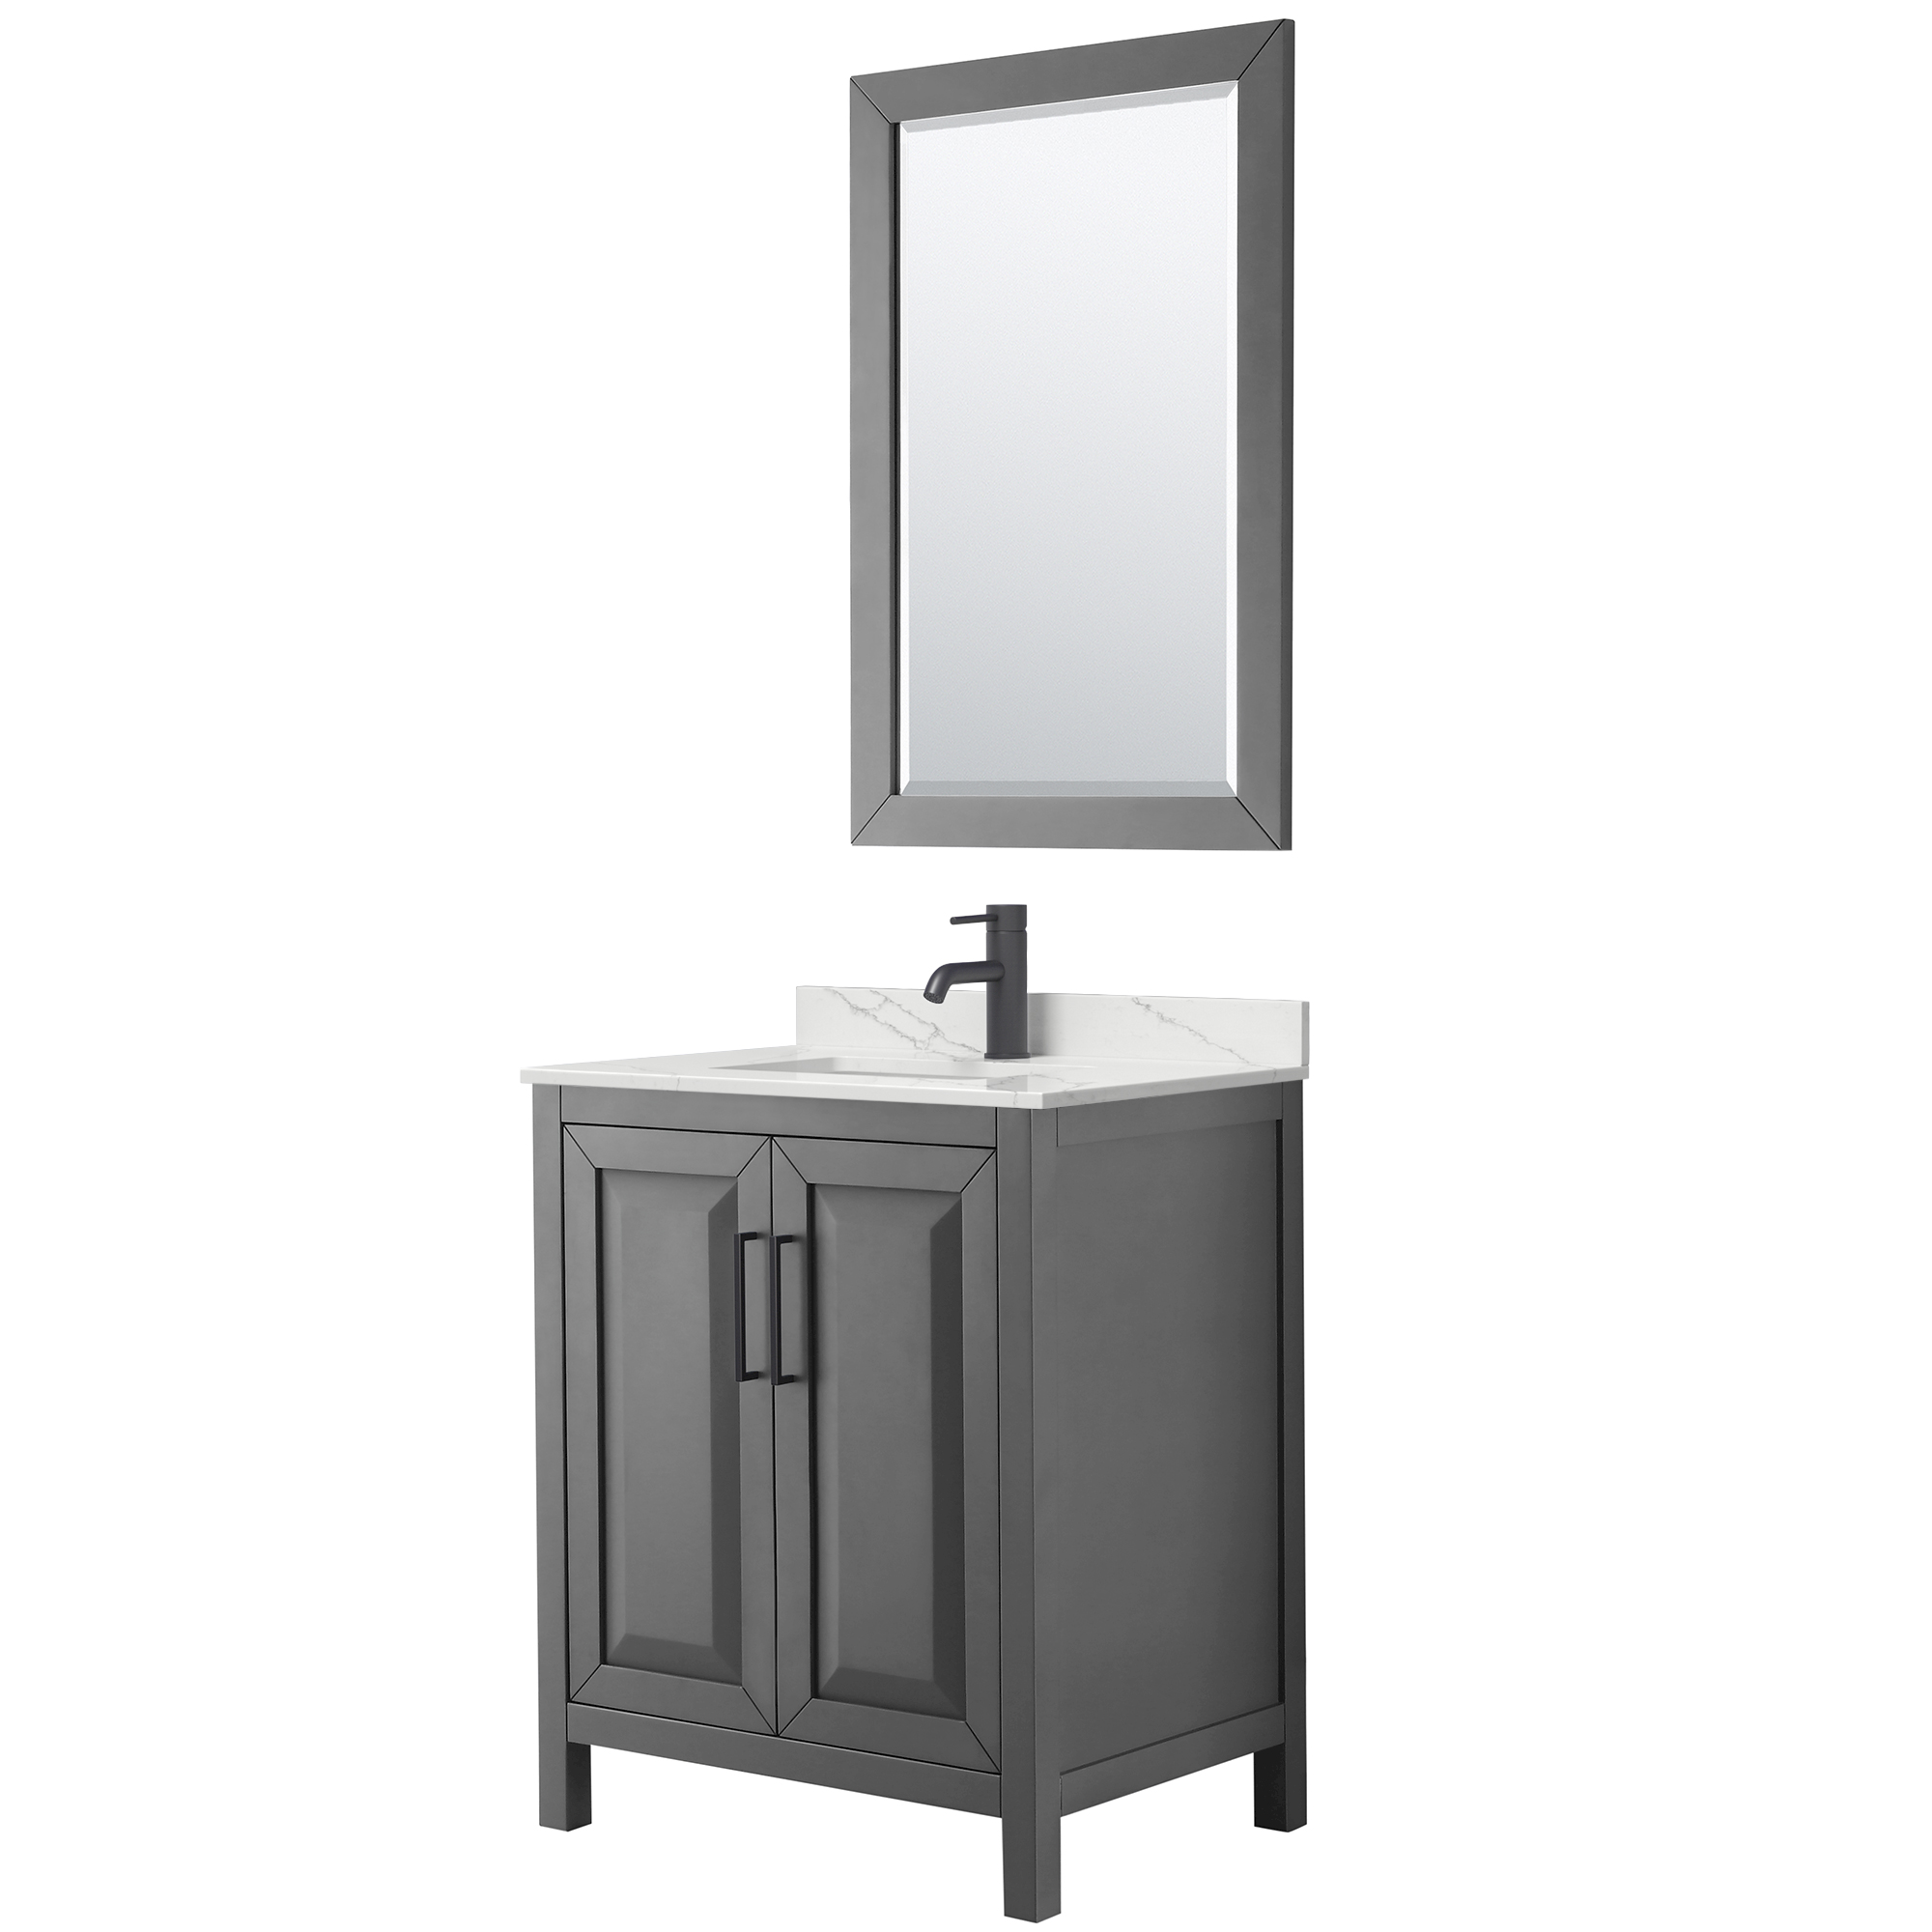 daria 30" single bathroom vanity by wyndham collection - dark gray